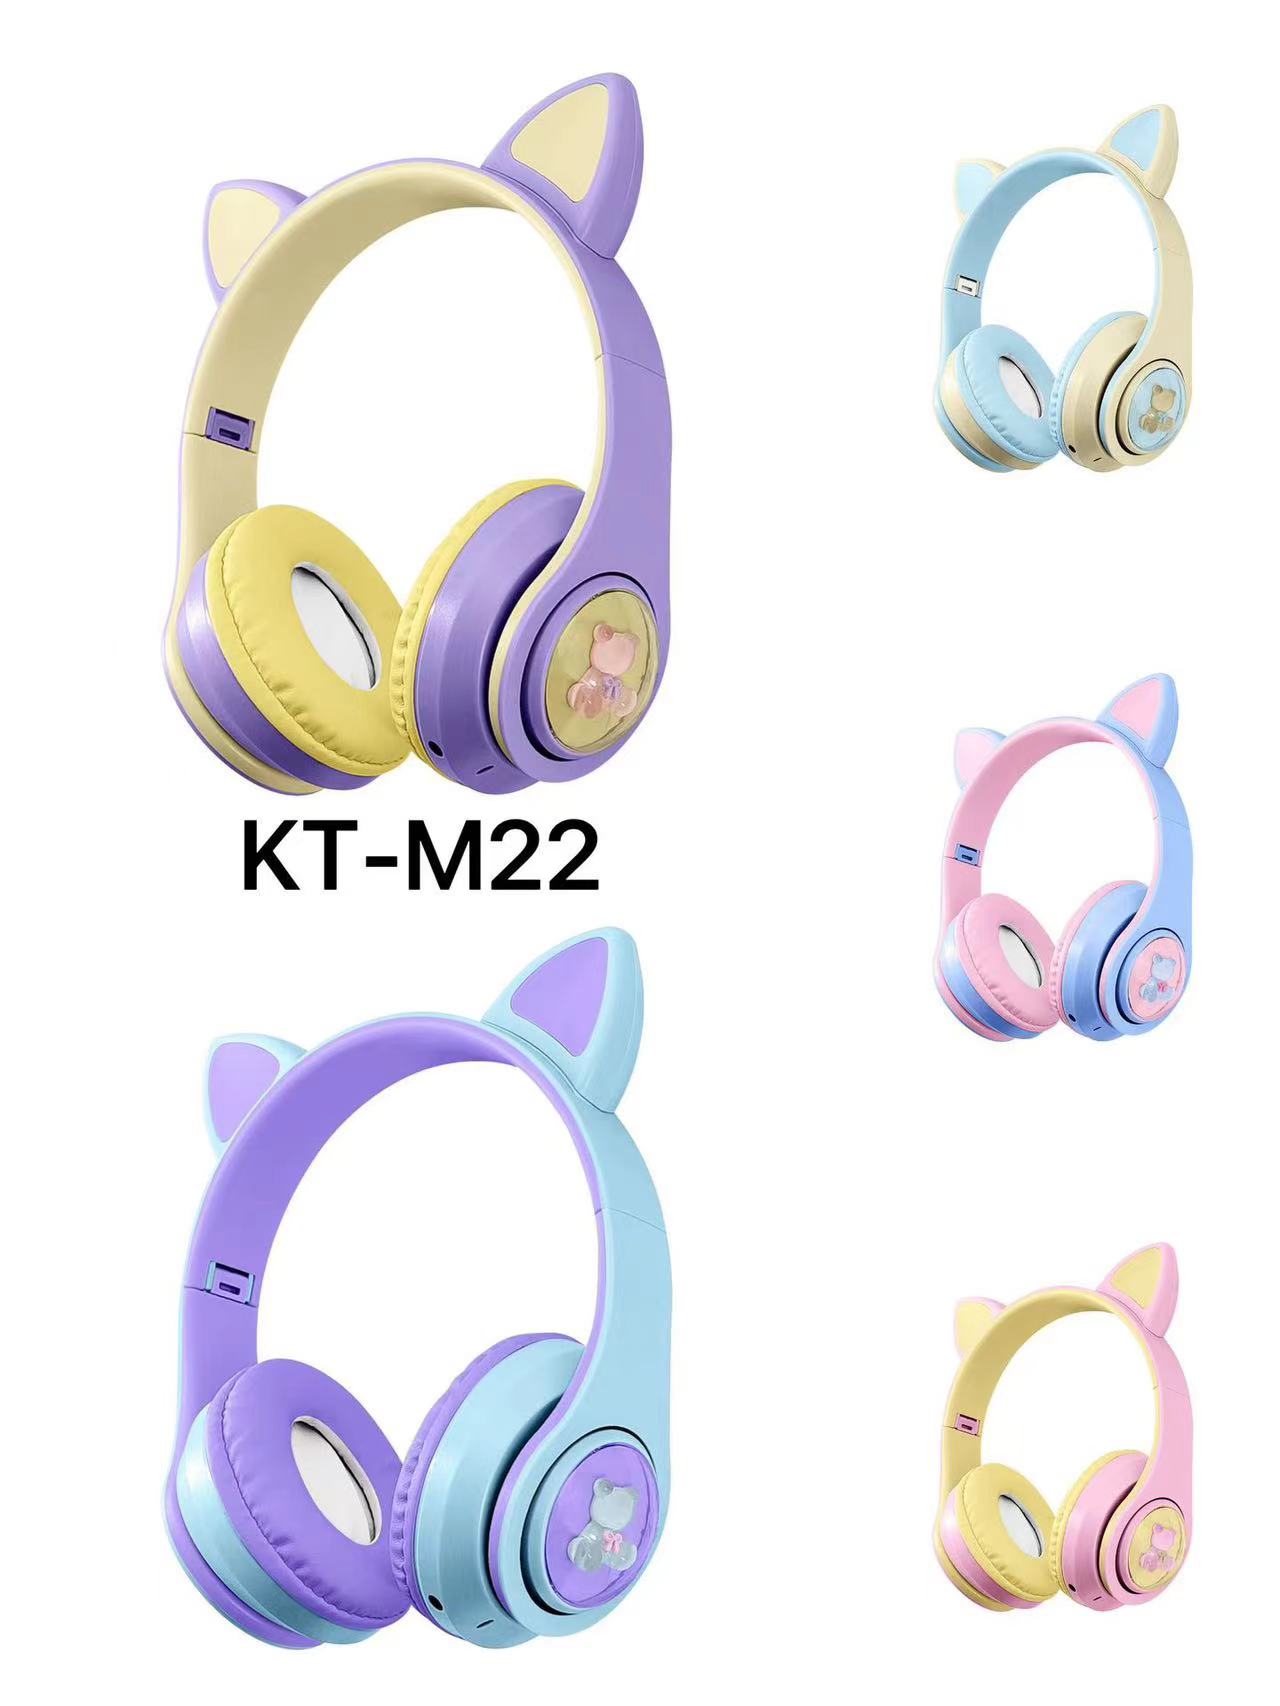 新款KT-M22无线蓝牙耳机可爱创意猫耳头戴式游戏电竞低延迟手